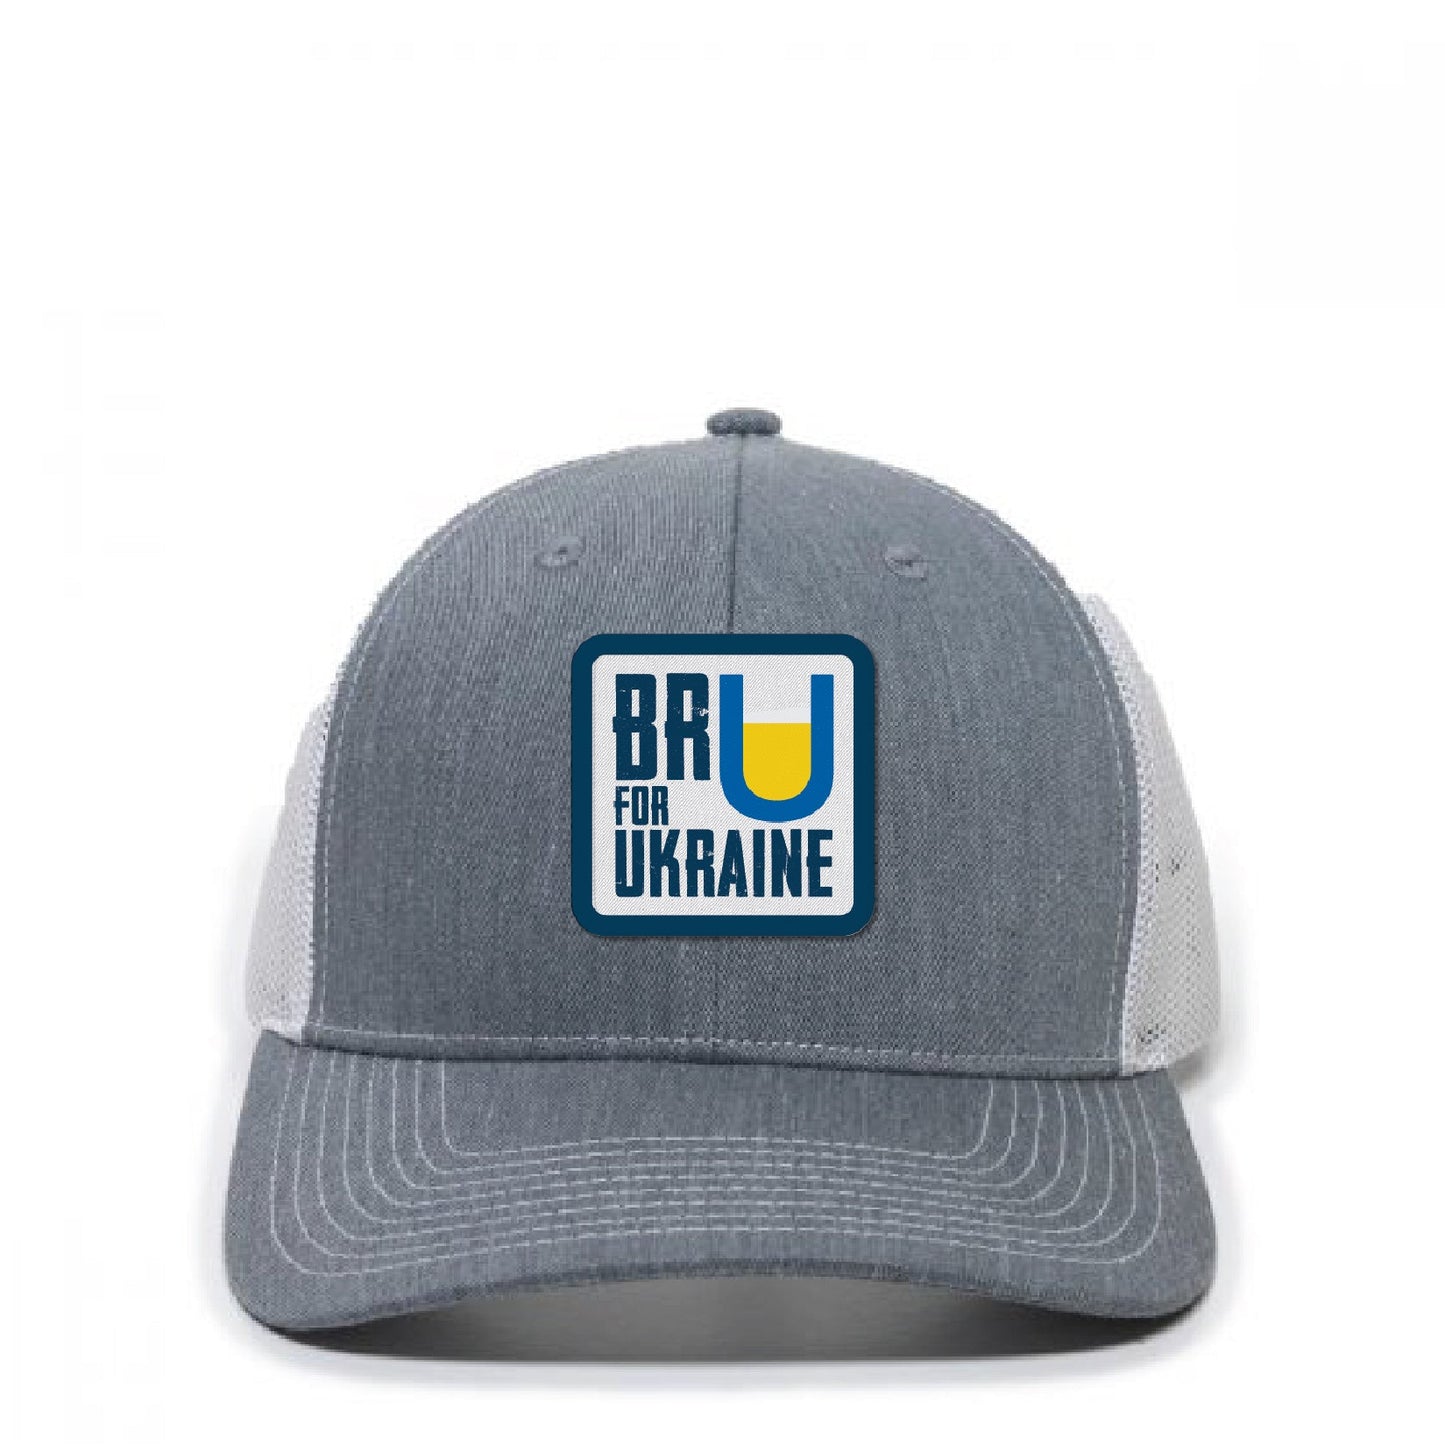 Bru For Ukraine - Grey/White Trucker Hat - DSP On Demand